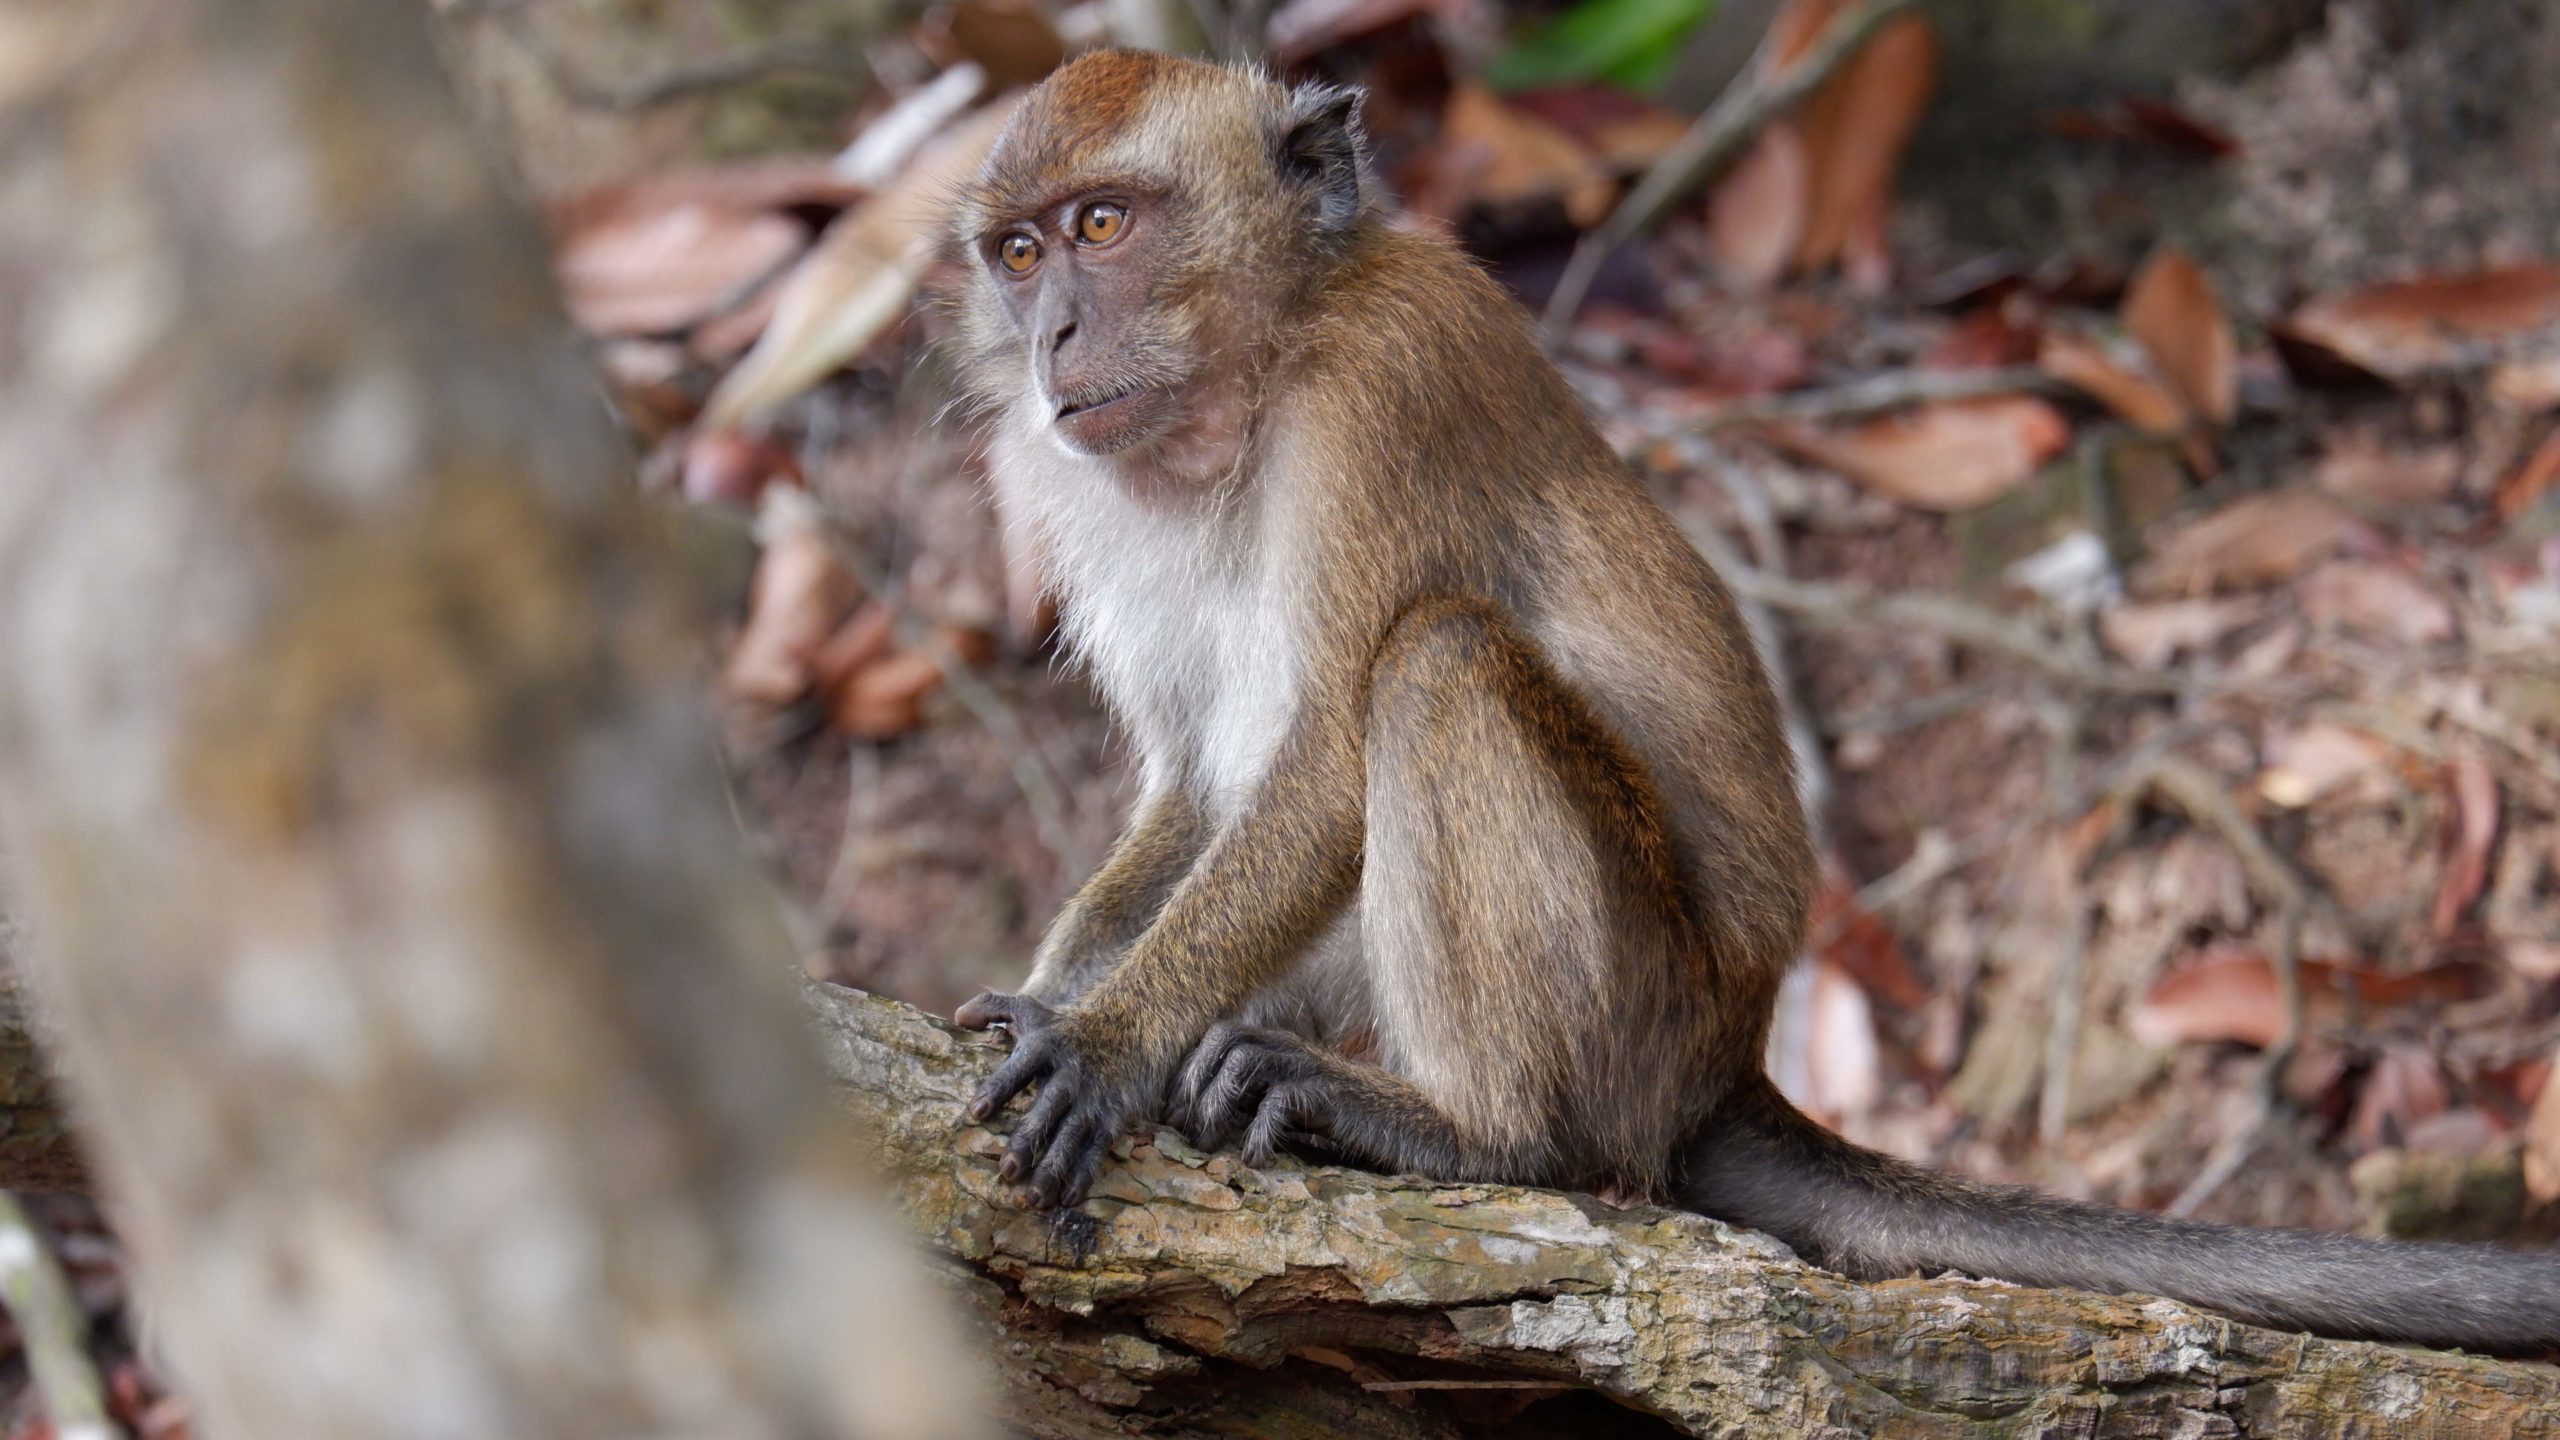 Monyet ekor panjang di Batam. Konflik manusia dan monyet ekor panjang di Batam, makin mengkhawatirkan. Foto: Yogi ES/ Mongabay Indonesia